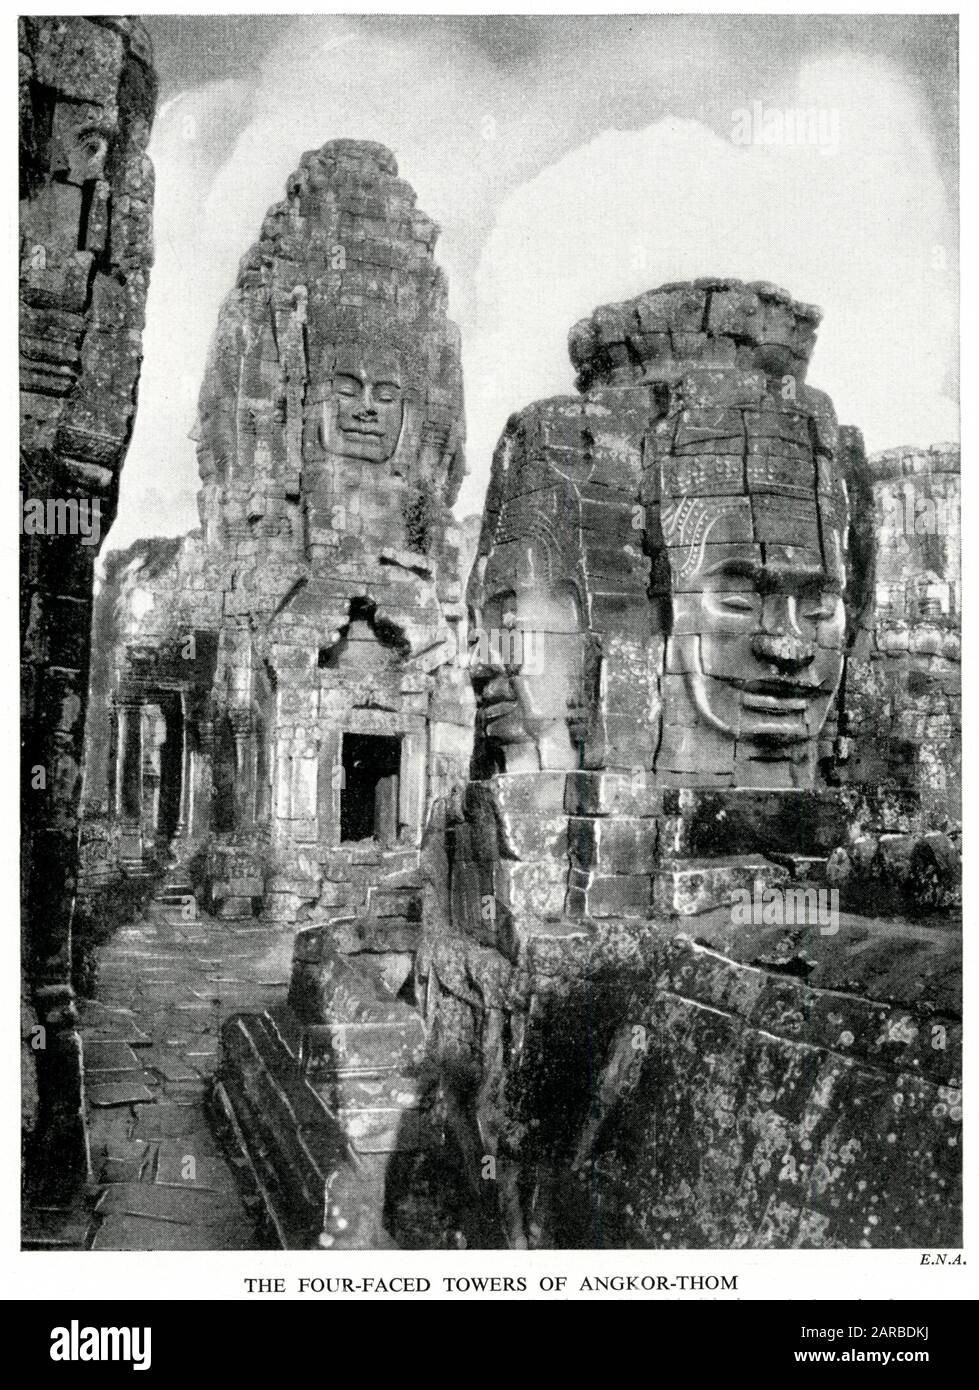 Ruines du temple Bayon, Angkor Thom, Cambodge, montrant les tours à quatre faces, considérées comme représentant les quatre faces de Brahma. Banque D'Images